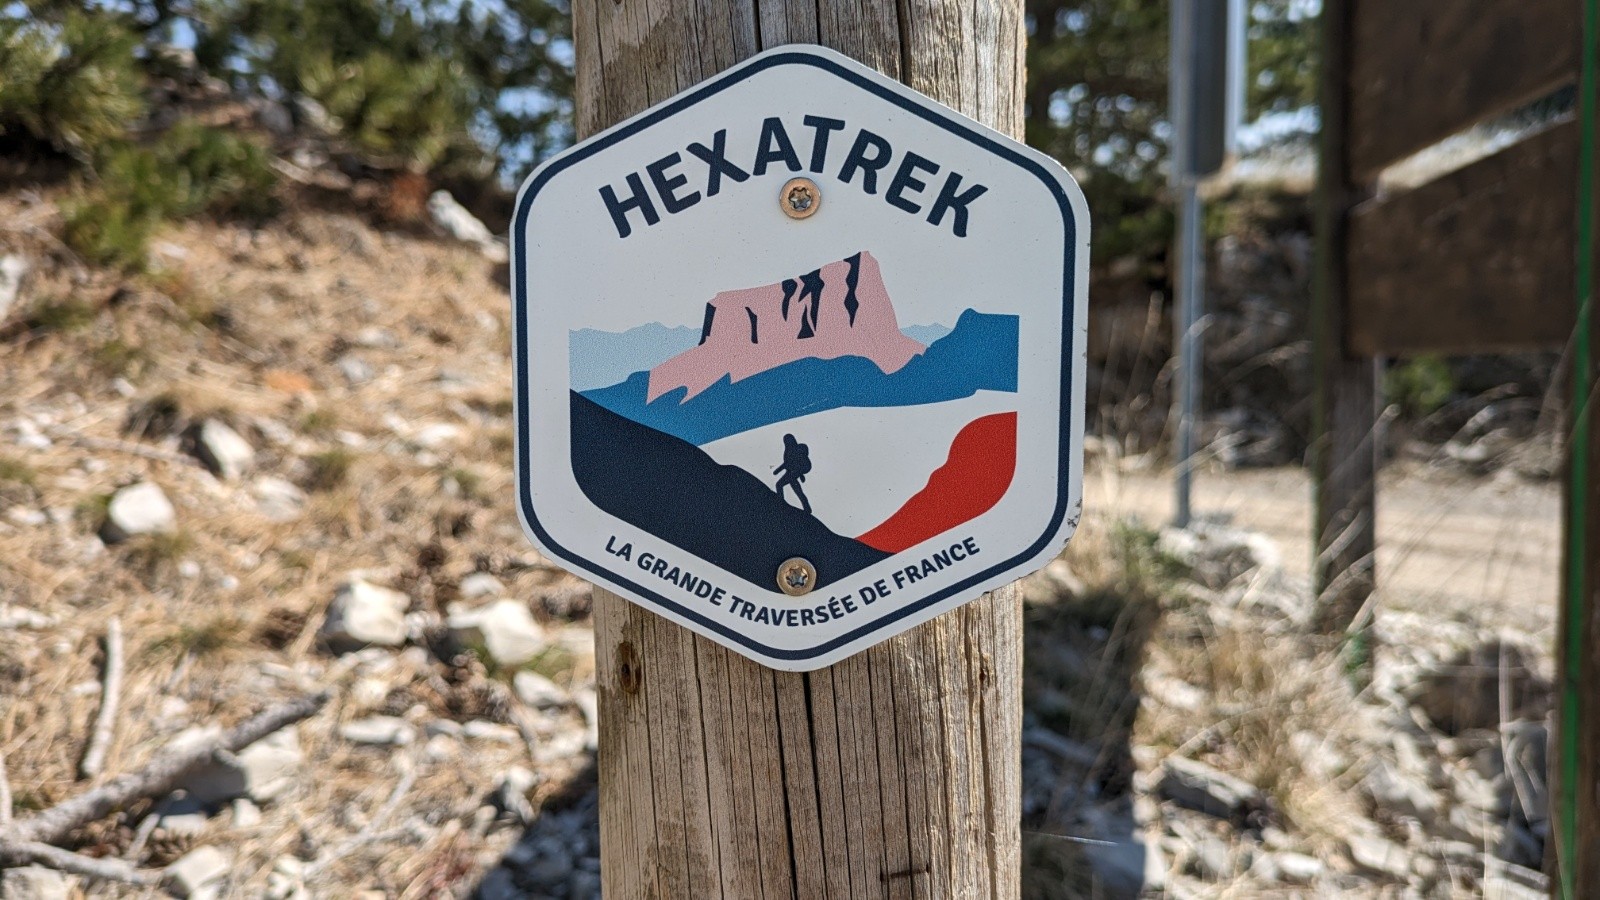  https://www.hexatrek.com/ - 3034km !